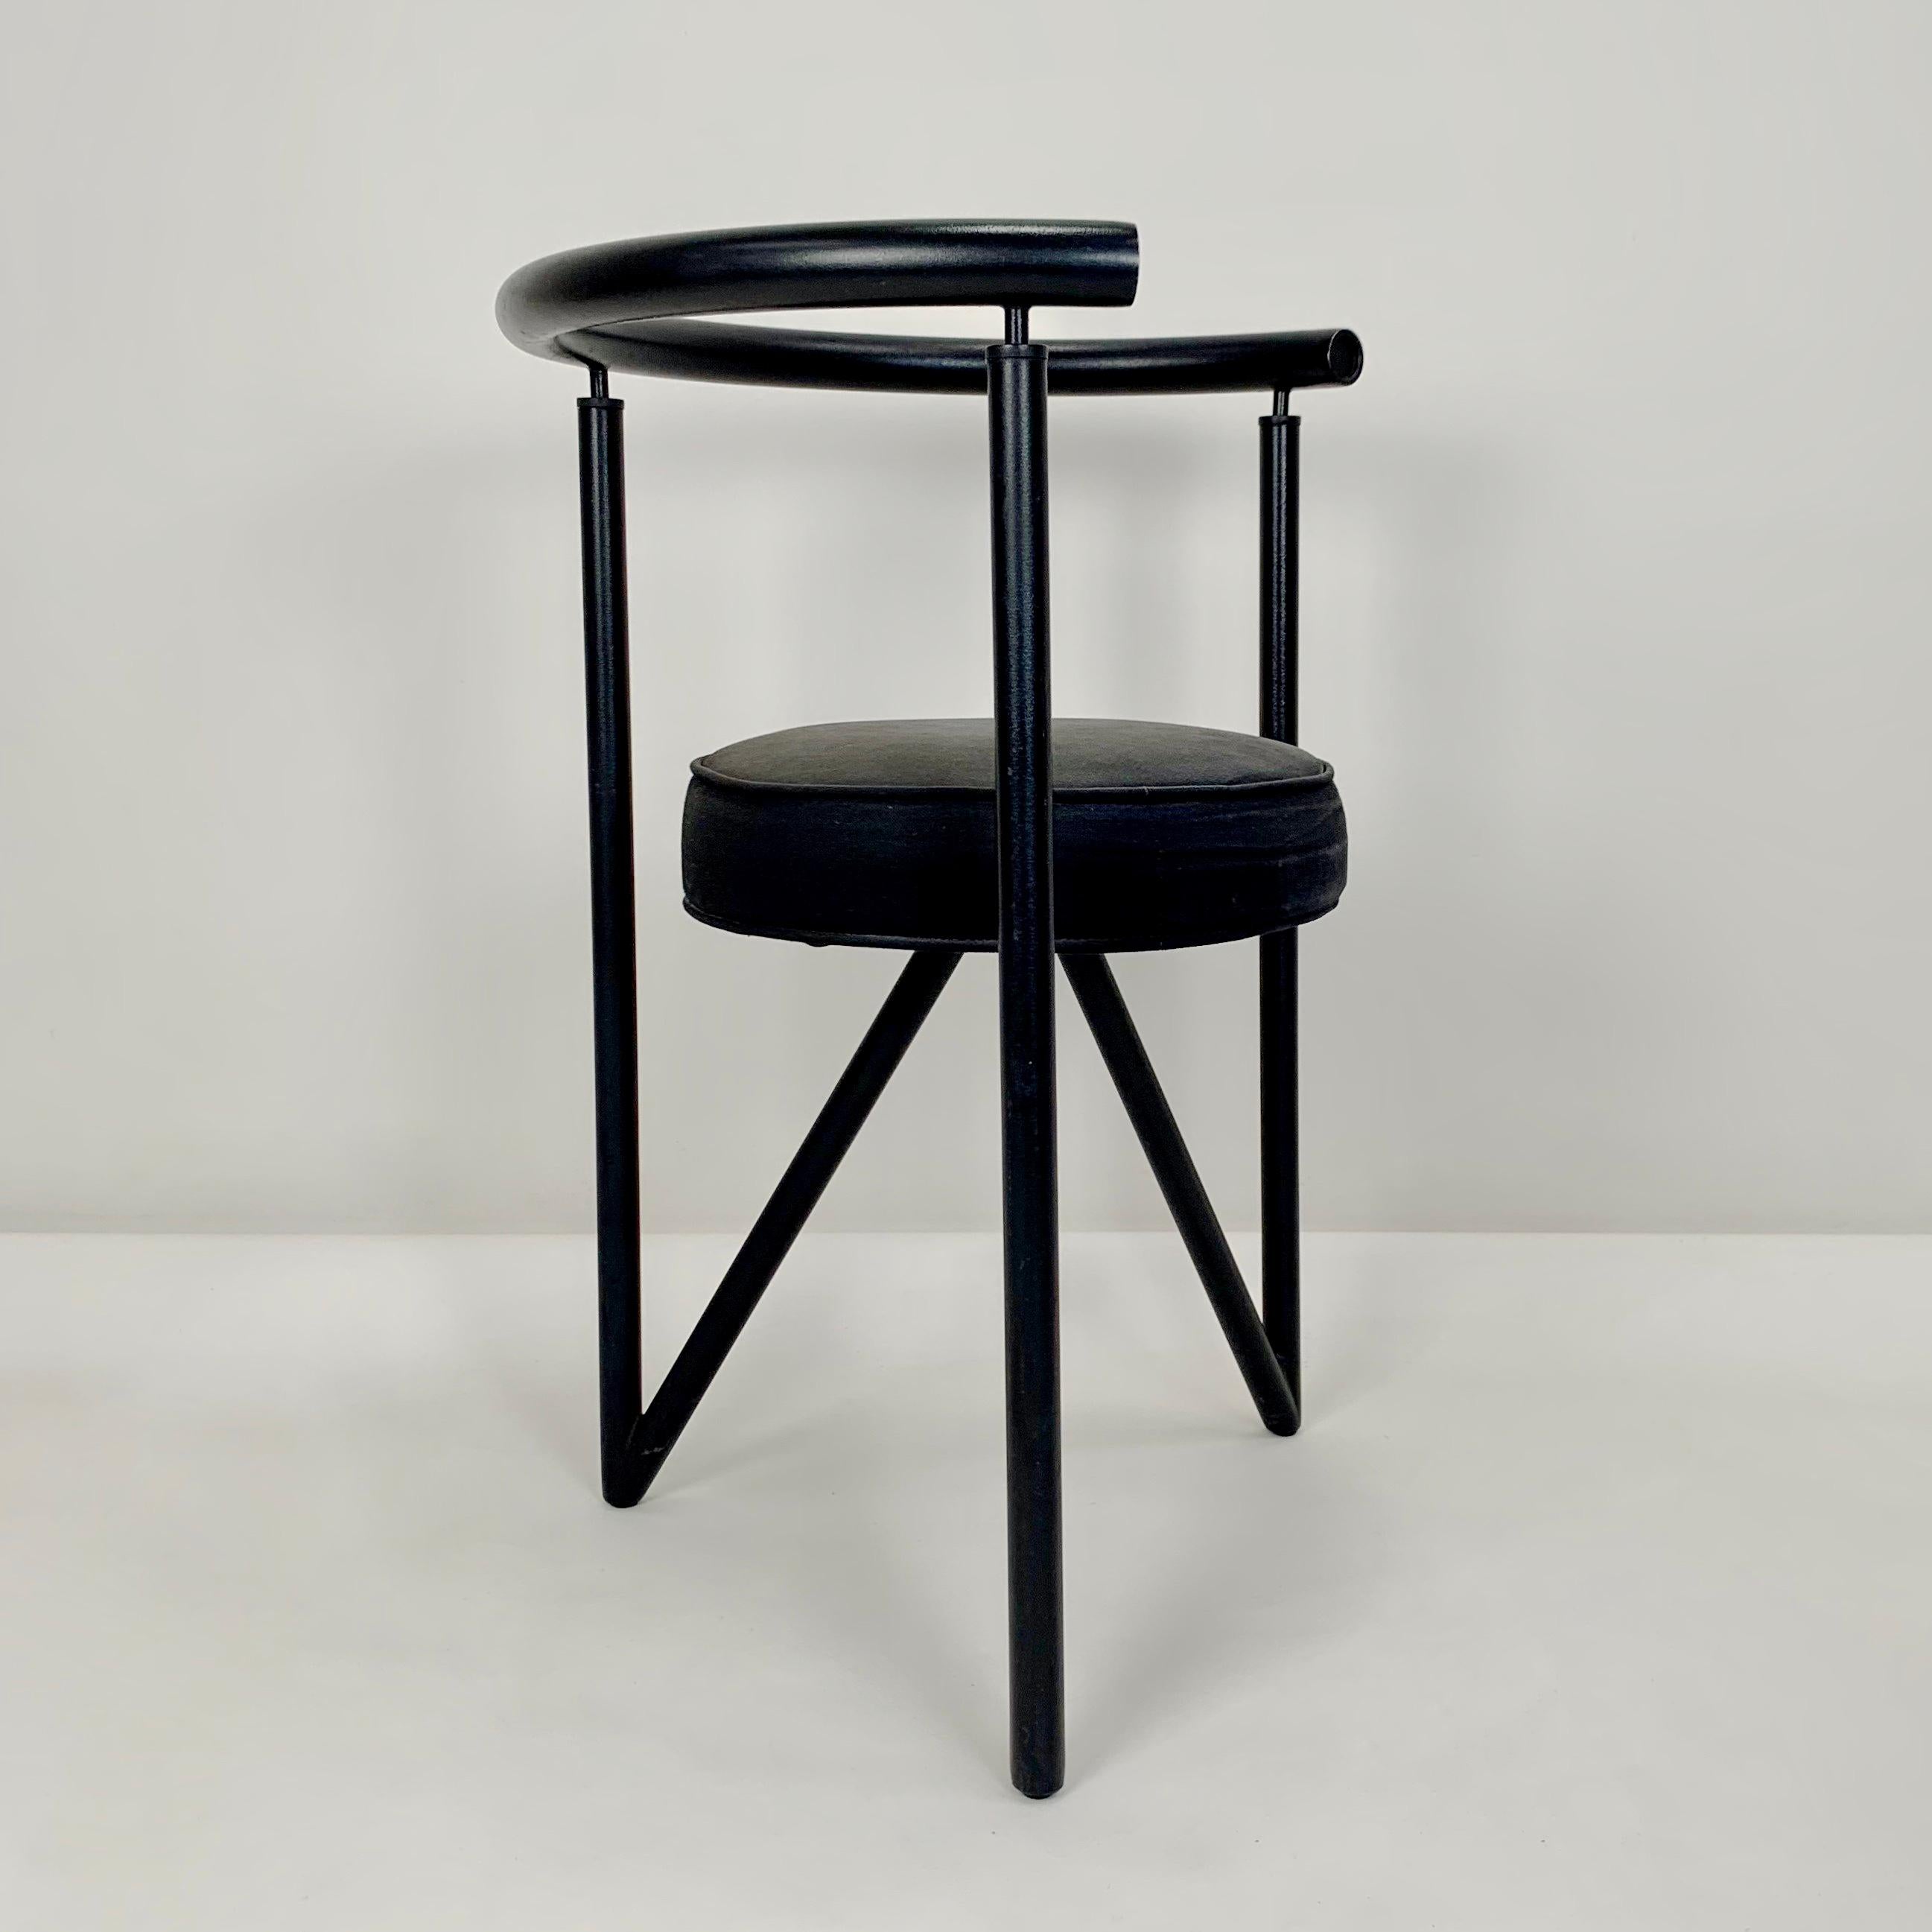 Philippe Starck Miss Dorn Modell Sessel für Disform 1982.
Schwarzes Metallgestell, runder Originalsitz aus schwarzem Stoff.
Abmessungen: 70 cm H, 54 cm B, 44 cm T, Sitzhöhe: 46 cm.
Originaler Vintage-Zustand.
Alle Käufe sind durch unsere